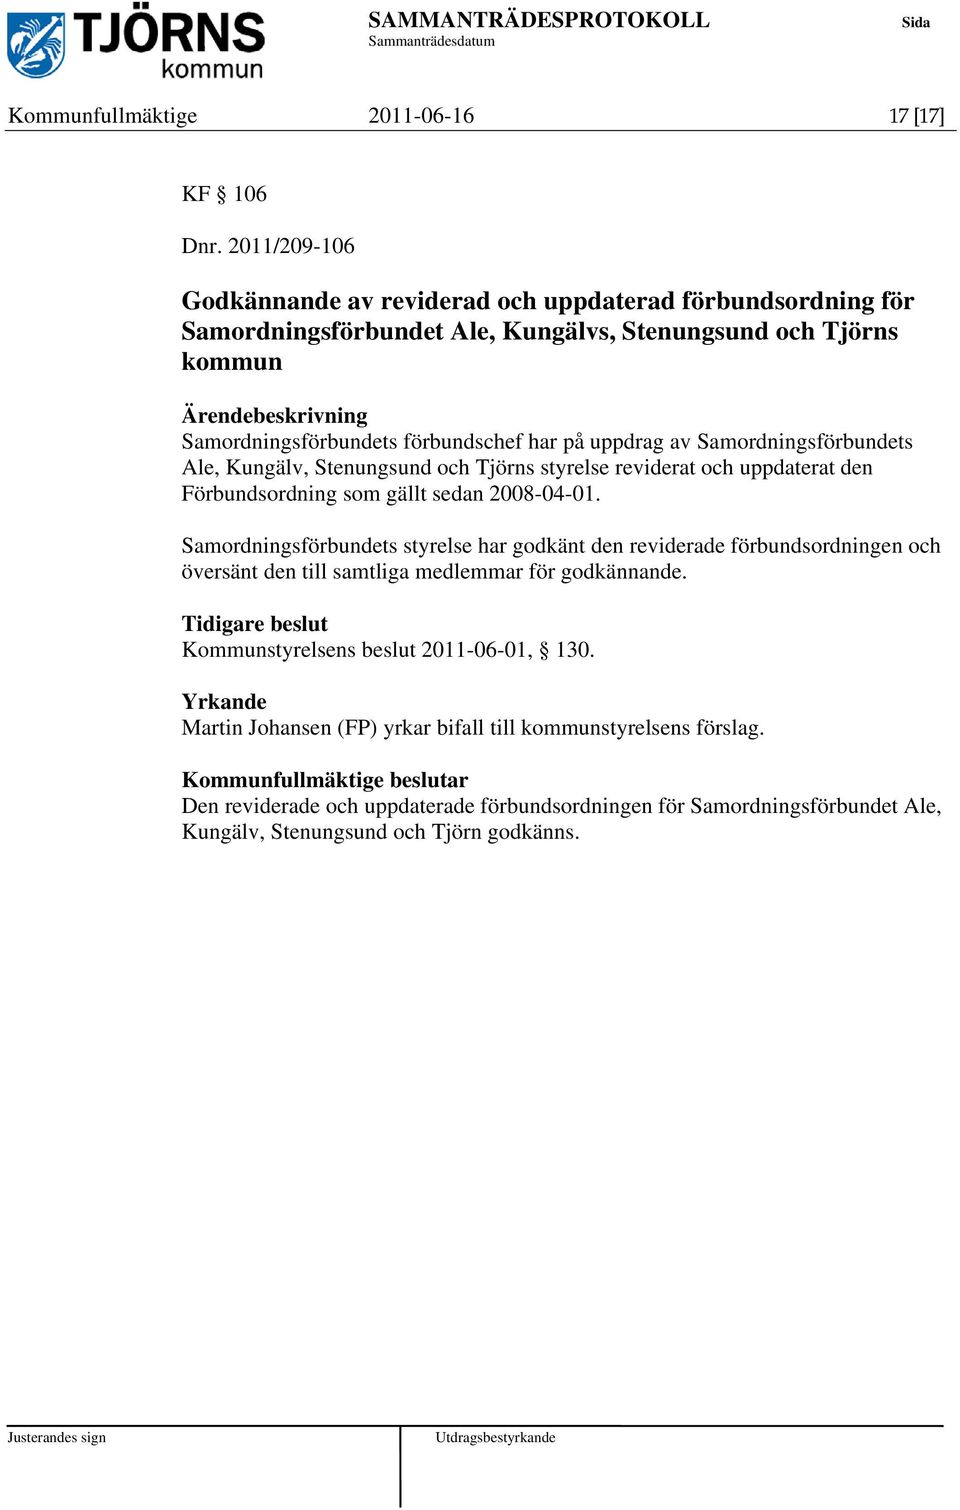 uppdrag av Samordningsförbundets Ale, Kungälv, Stenungsund och Tjörns styrelse reviderat och uppdaterat den Förbundsordning som gällt sedan 2008-04-01.